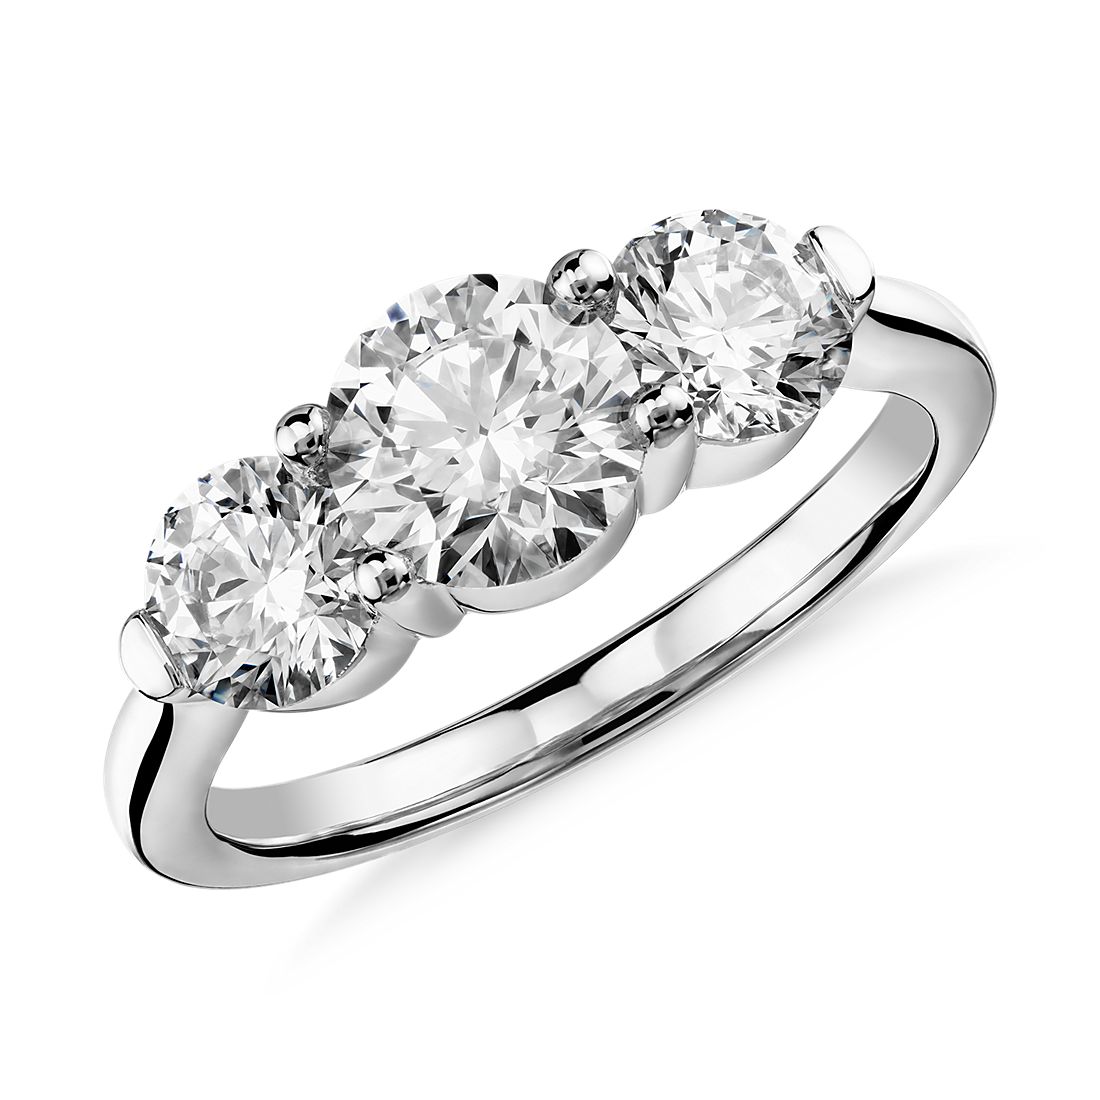 Blue Nile Signature Comfort Fit Three-Stone Diamond Ring in Platinum